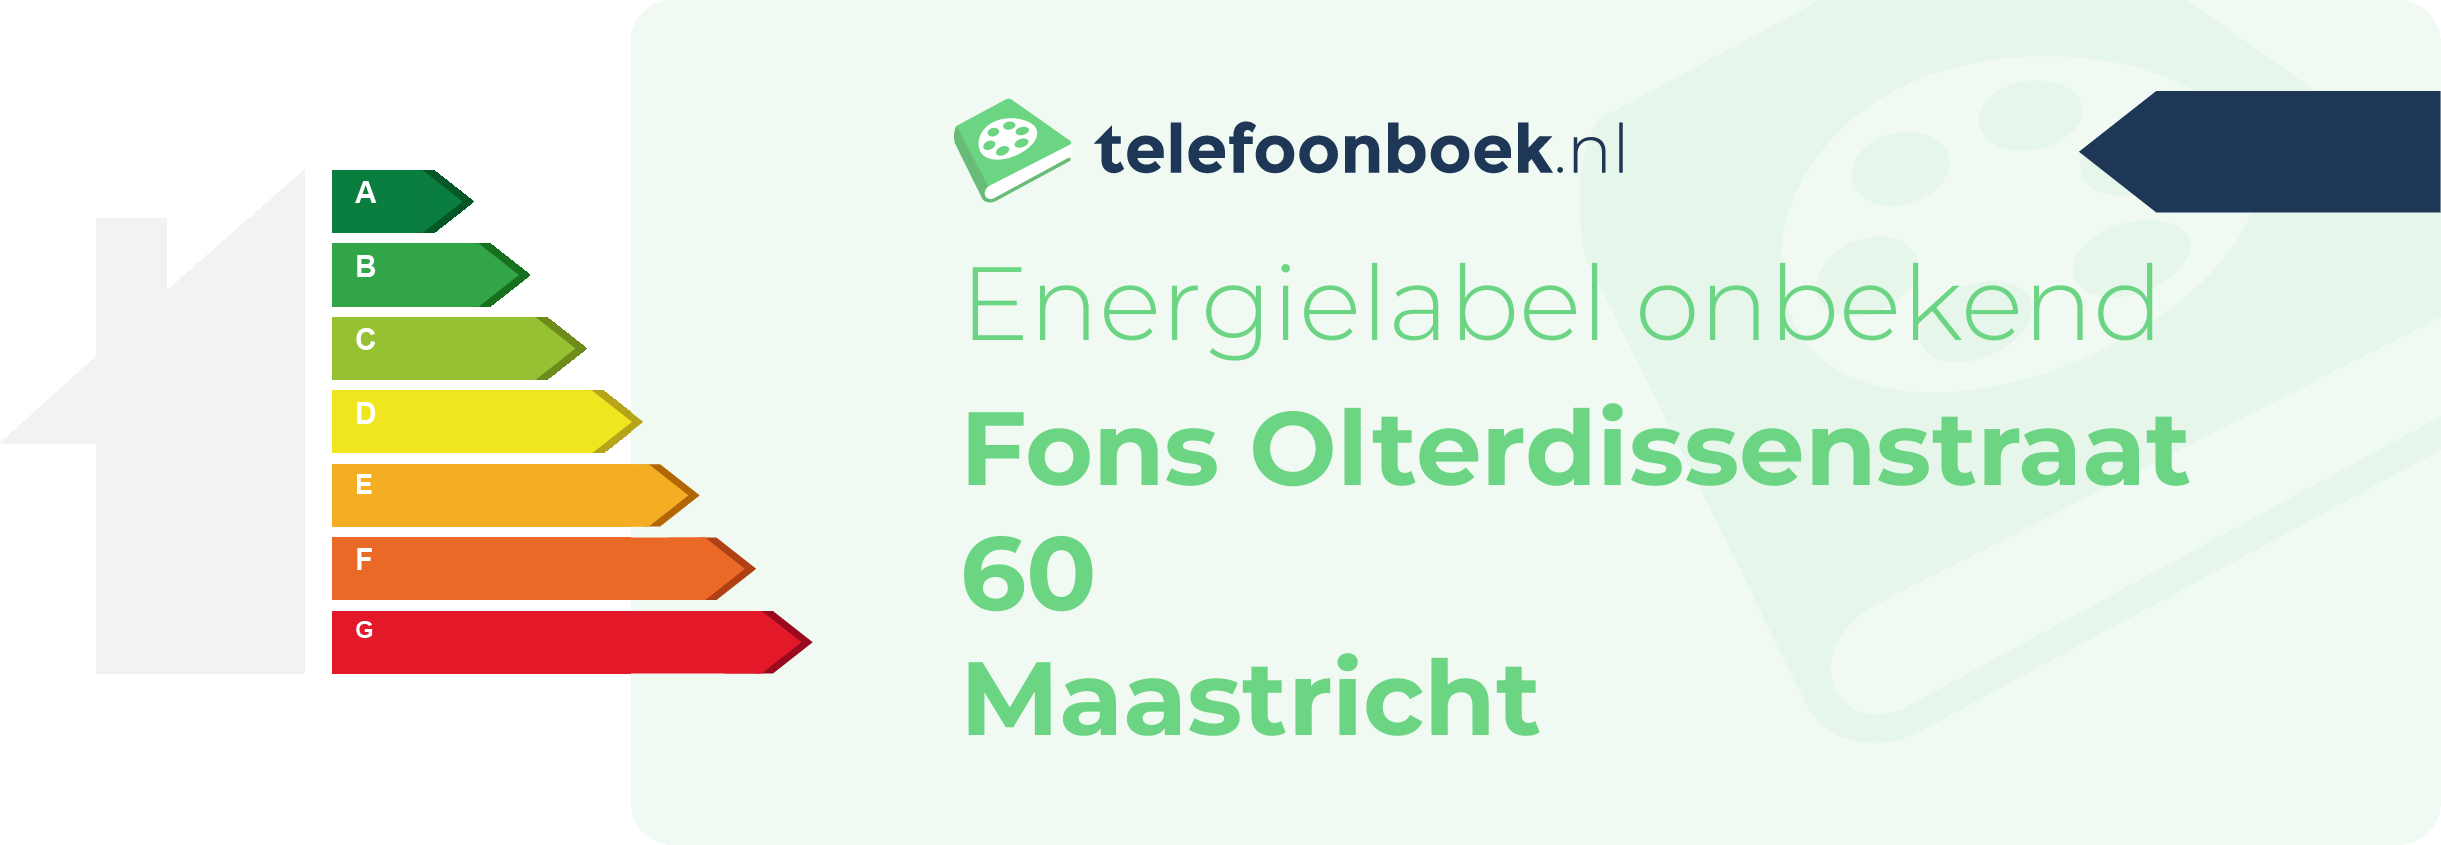 Energielabel Fons Olterdissenstraat 60 Maastricht